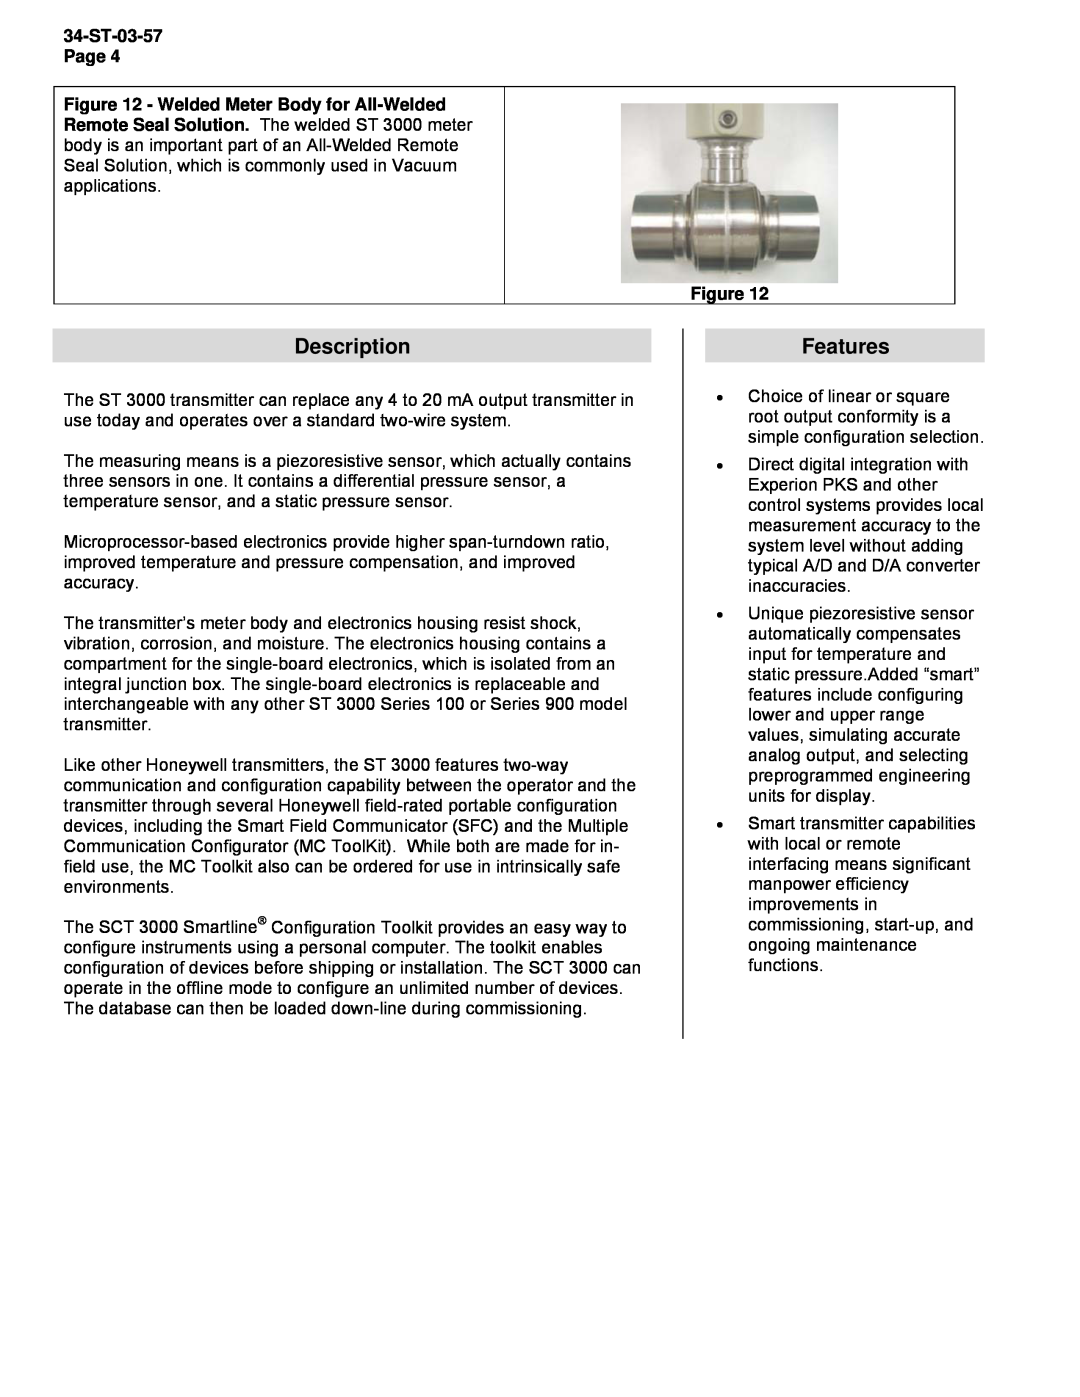 Honeywell STR93D, STR94G manual Description, Features, 34-ST-03-57Page 